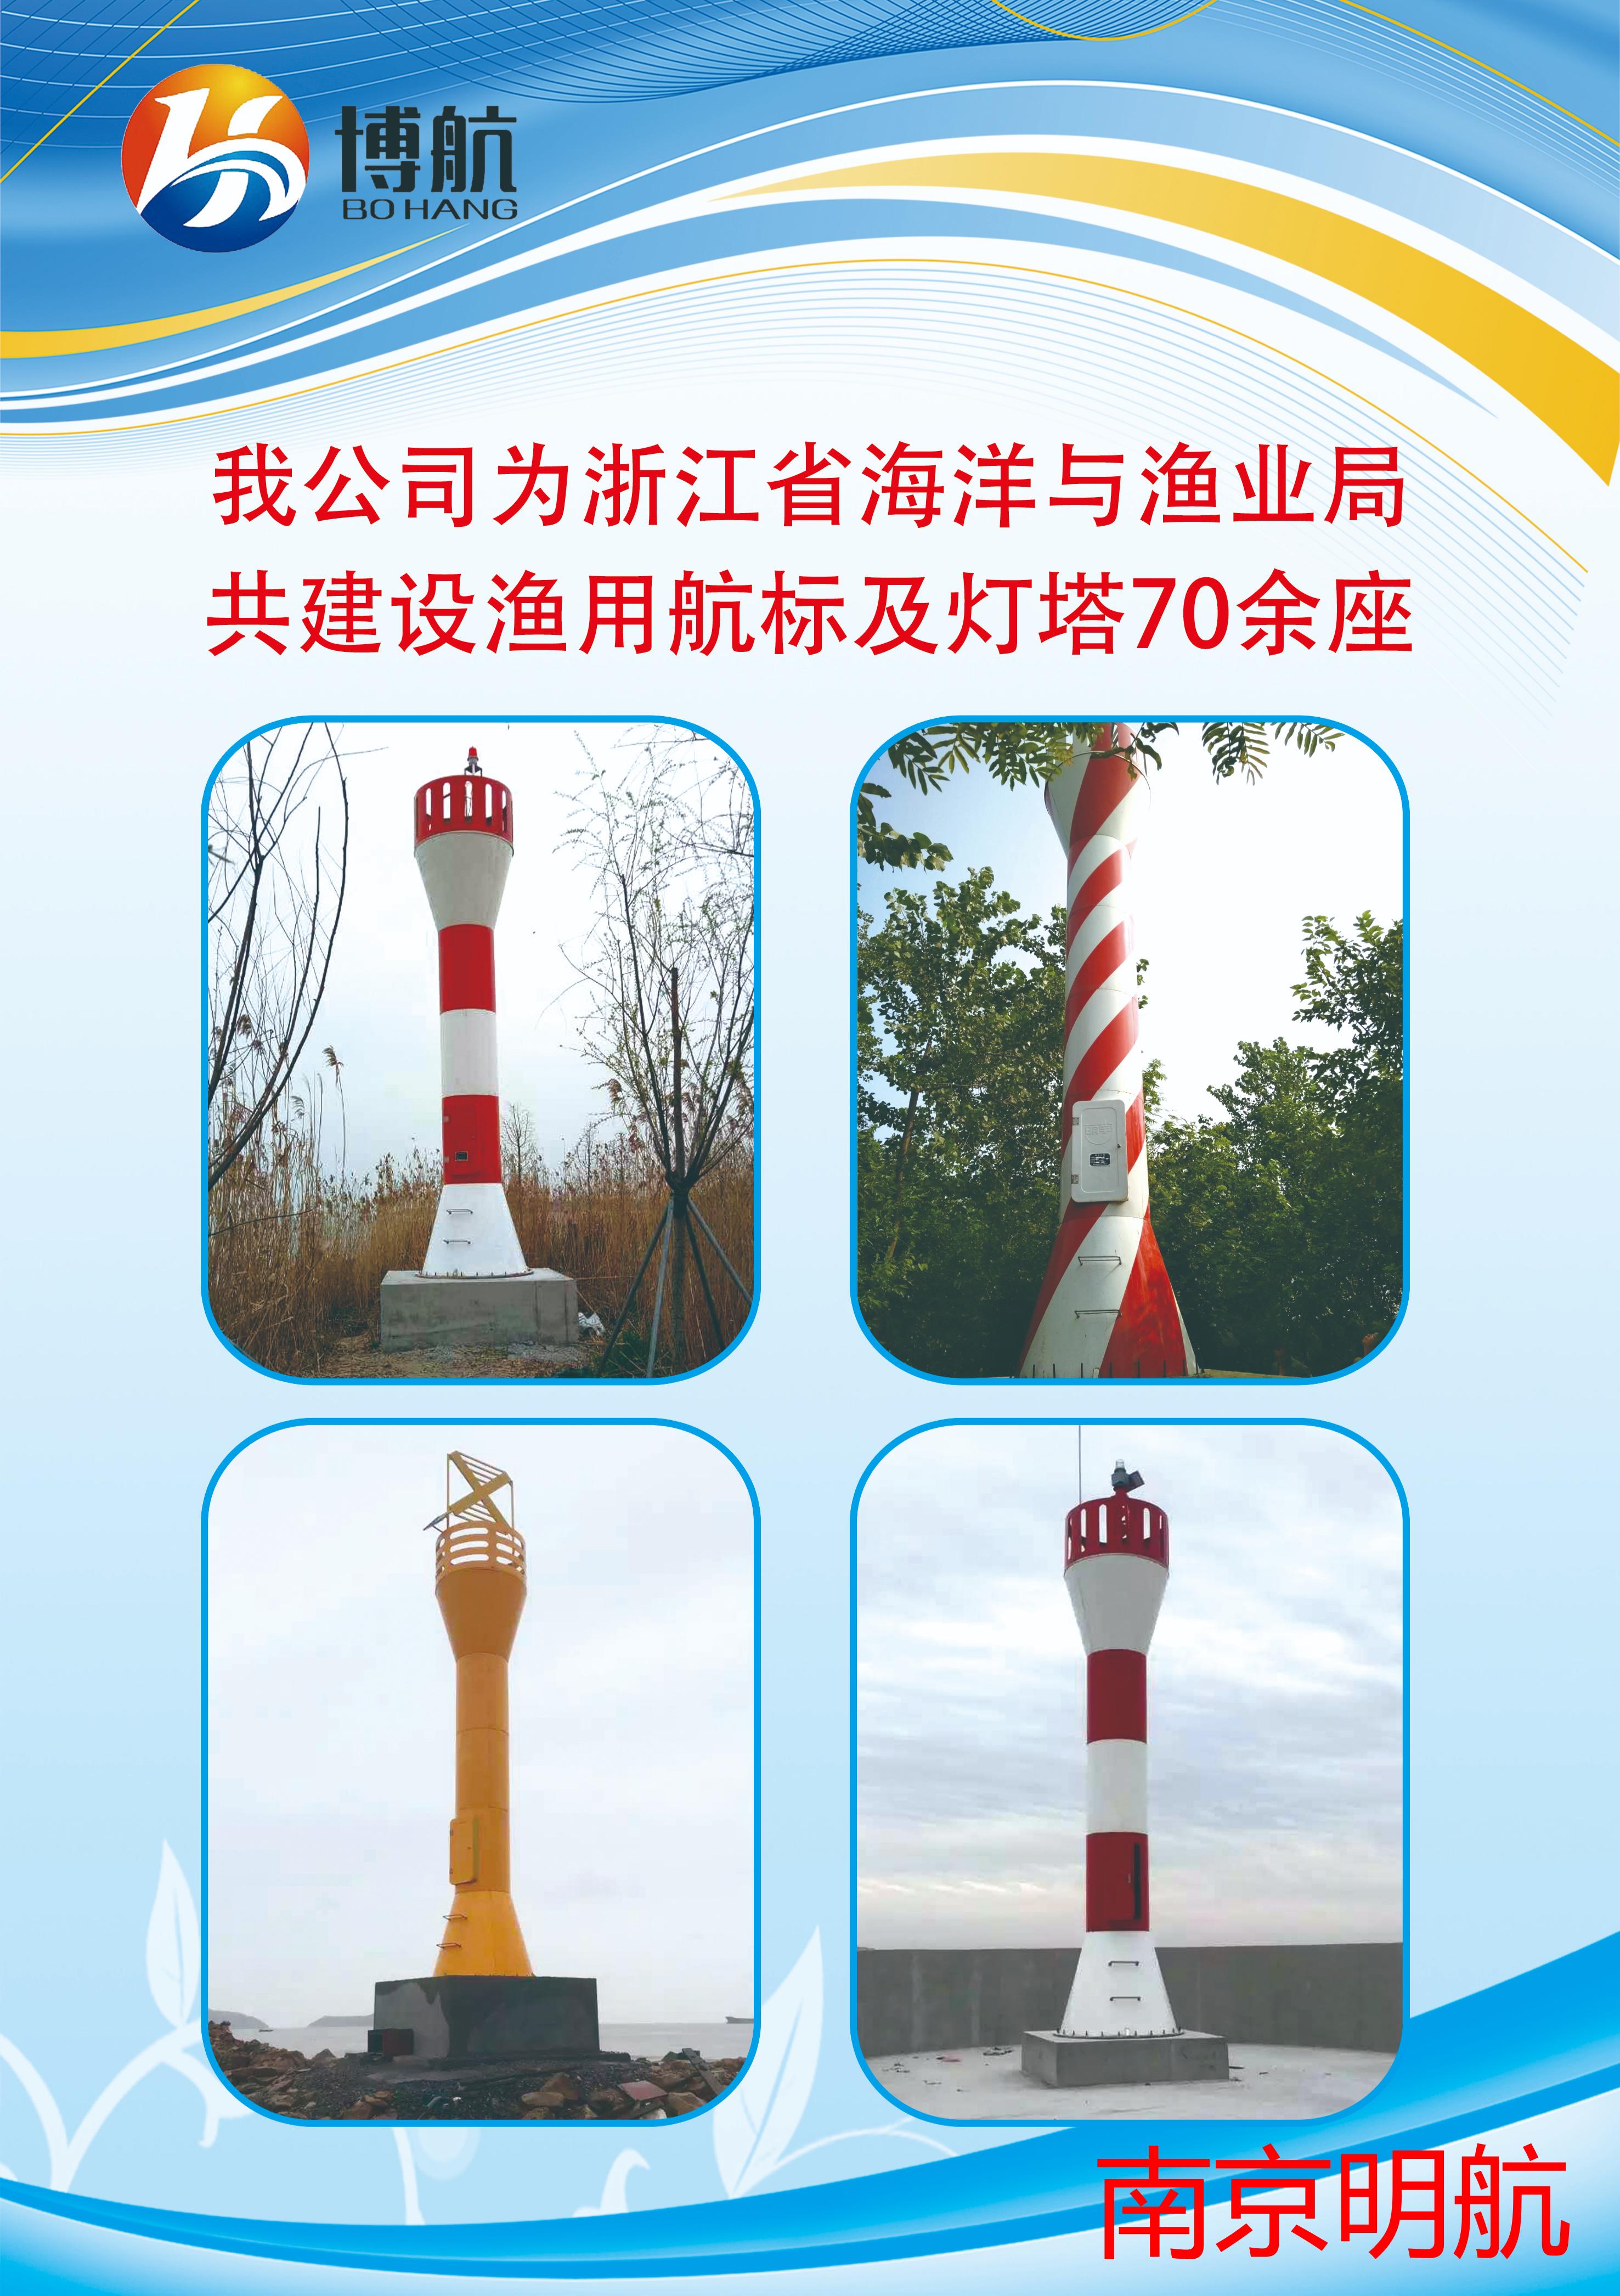 我公司为浙江省海洋和渔业局共建设渔用航标及灯塔70余座  明航专业航标器材生产单位 助航设备